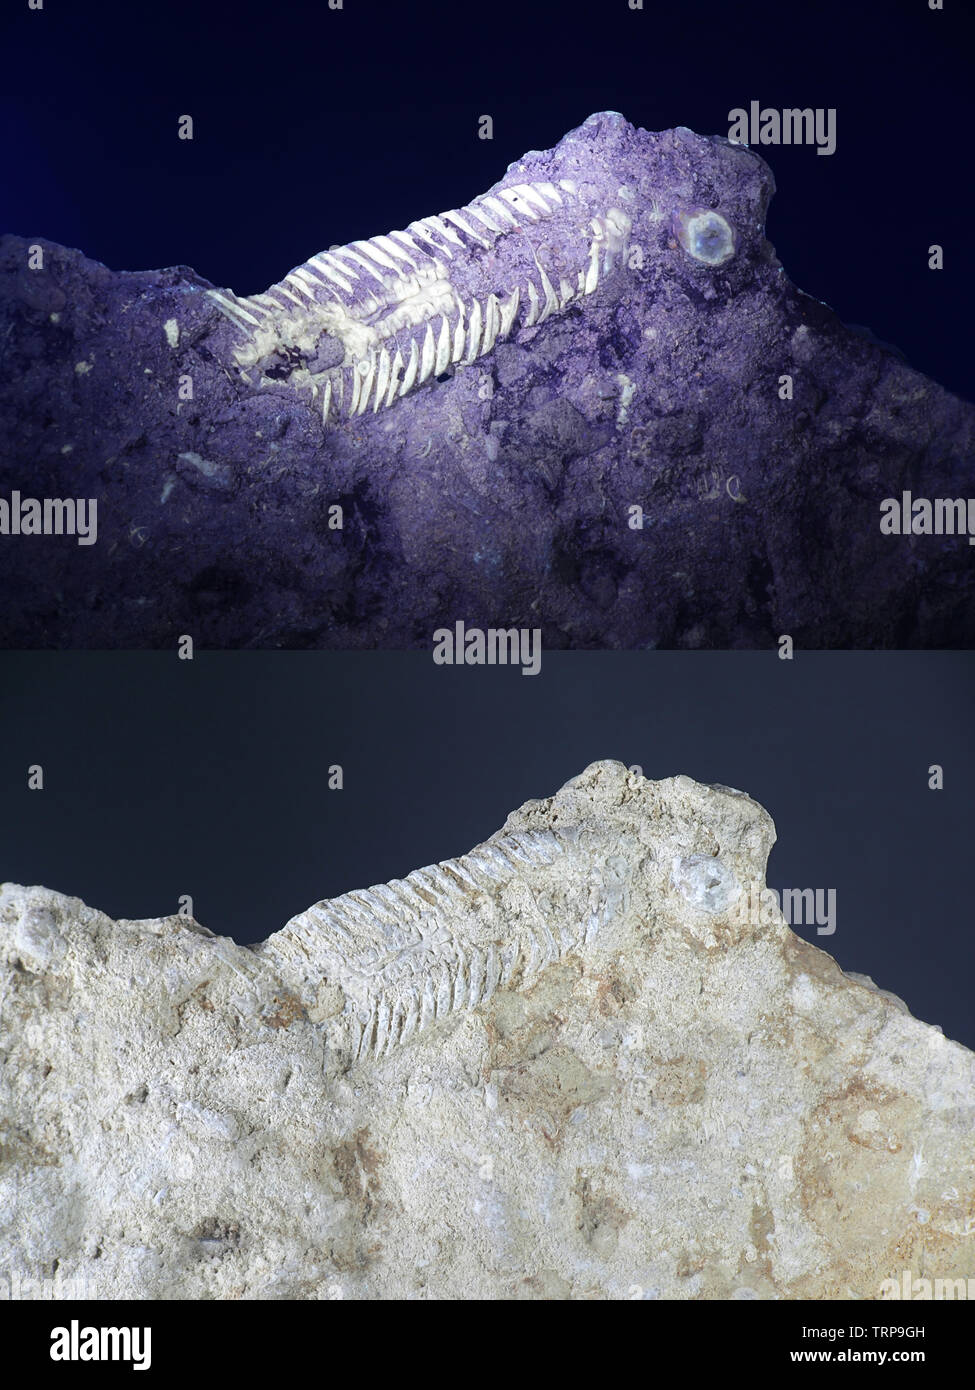 Combustibles fossiles de trilobites du Silurien de Saarenmaa, Estonie, photographiée en lumière ultraviolette (365 nm). Image du bas montrant même échantillon dans la lumière du jour. Banque D'Images